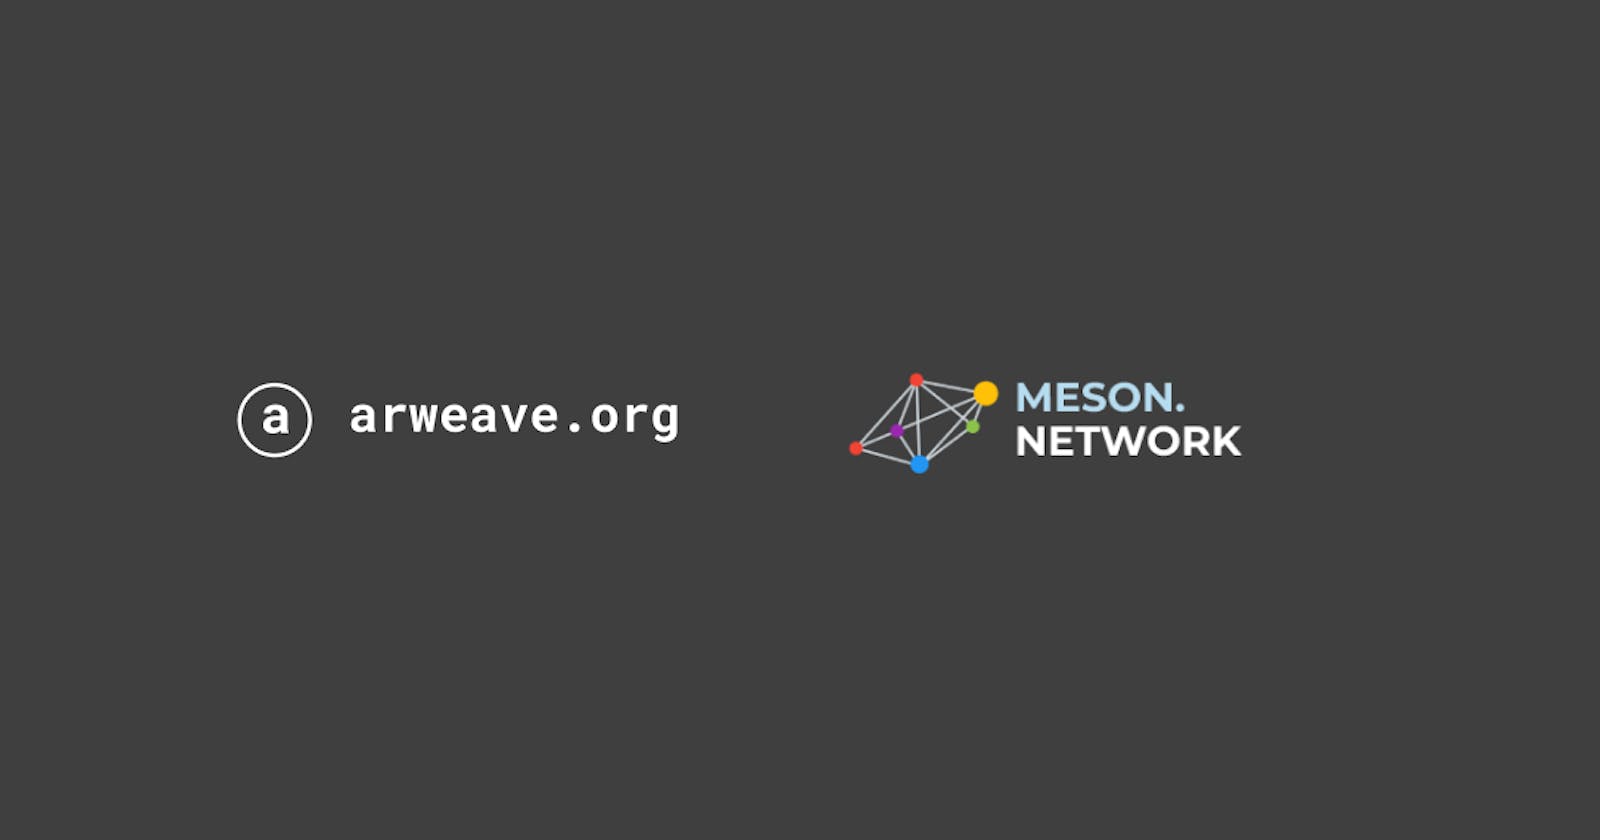 Meson Network enhance Arweave